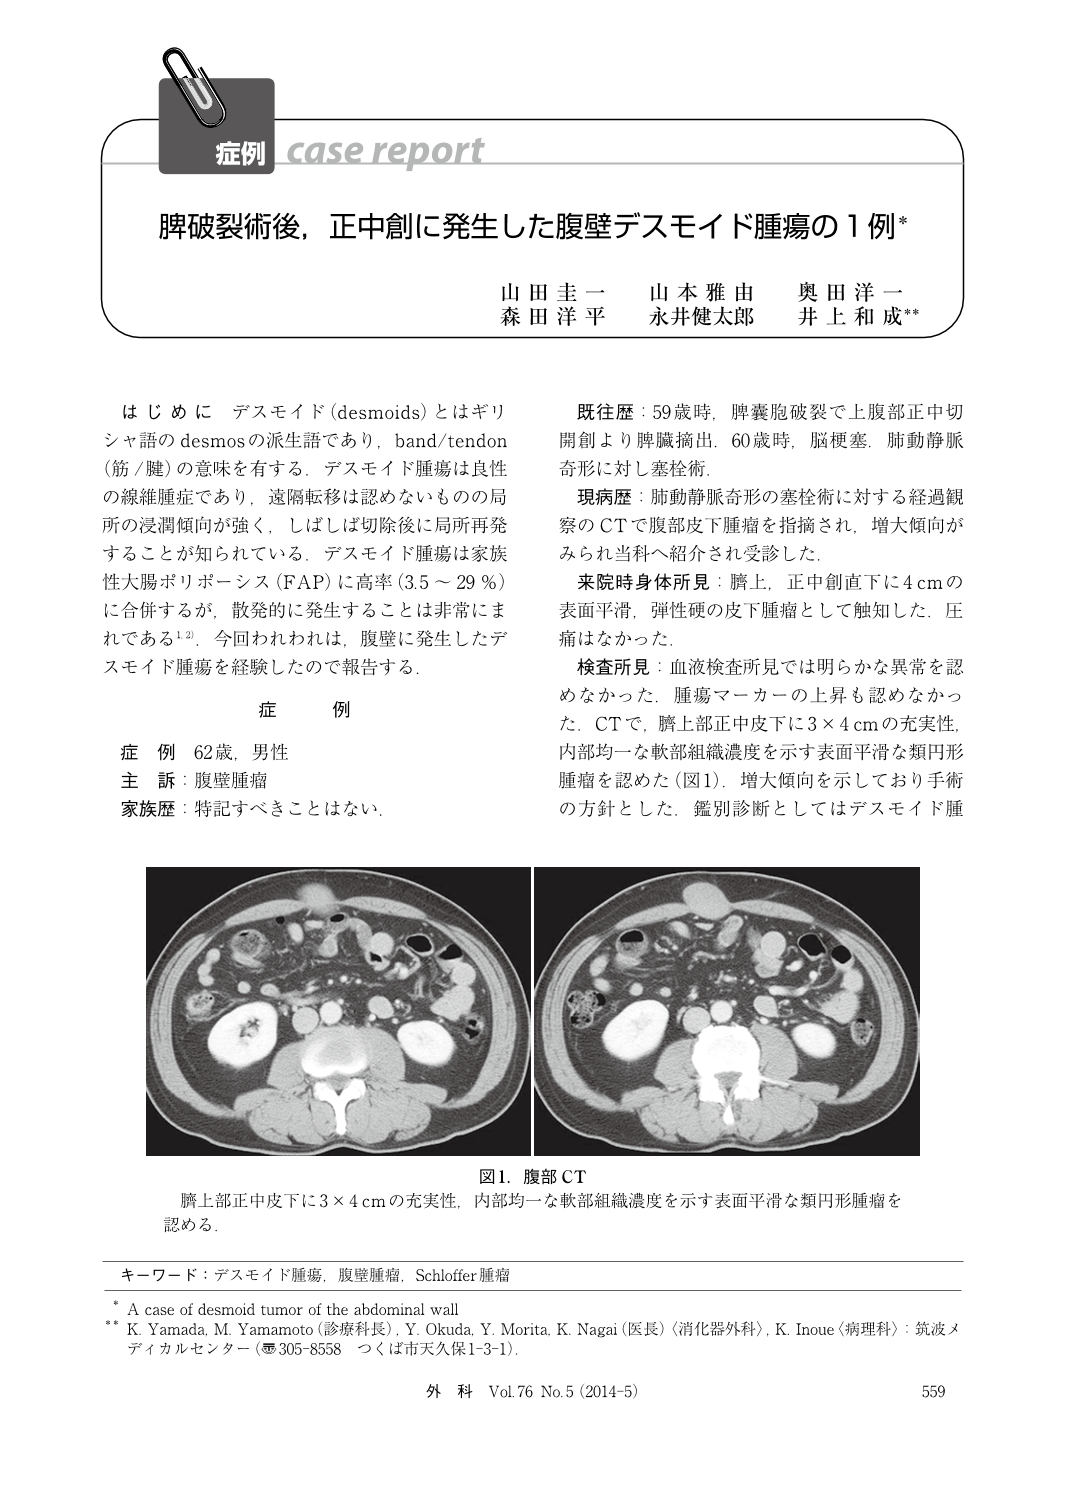 脾破裂術後 正中創に発生した腹壁デスモイド腫瘍の1例 臨床雑誌外科 76巻5号 医書 Jp